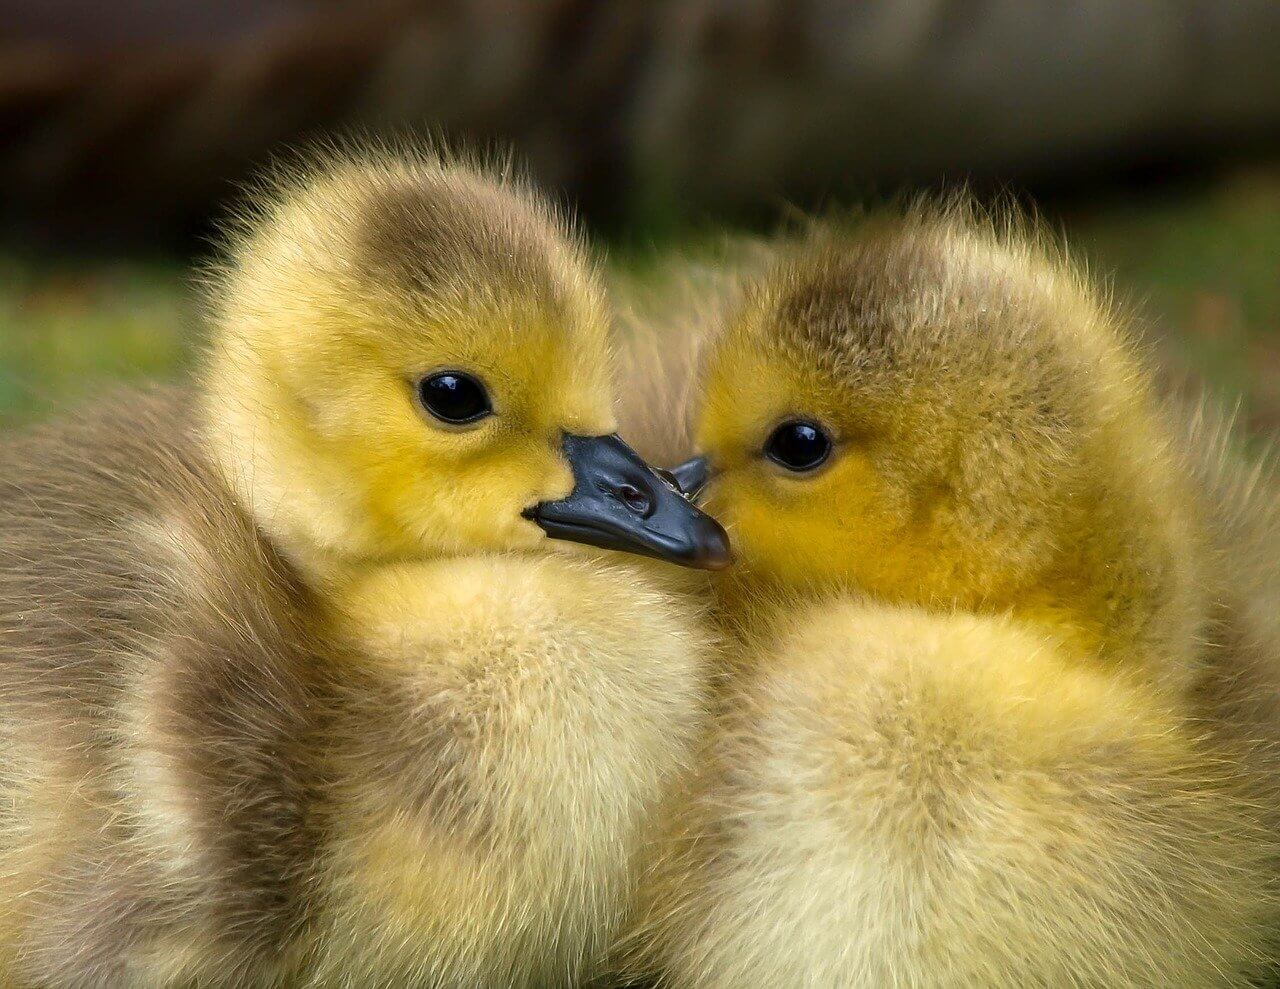 duckies